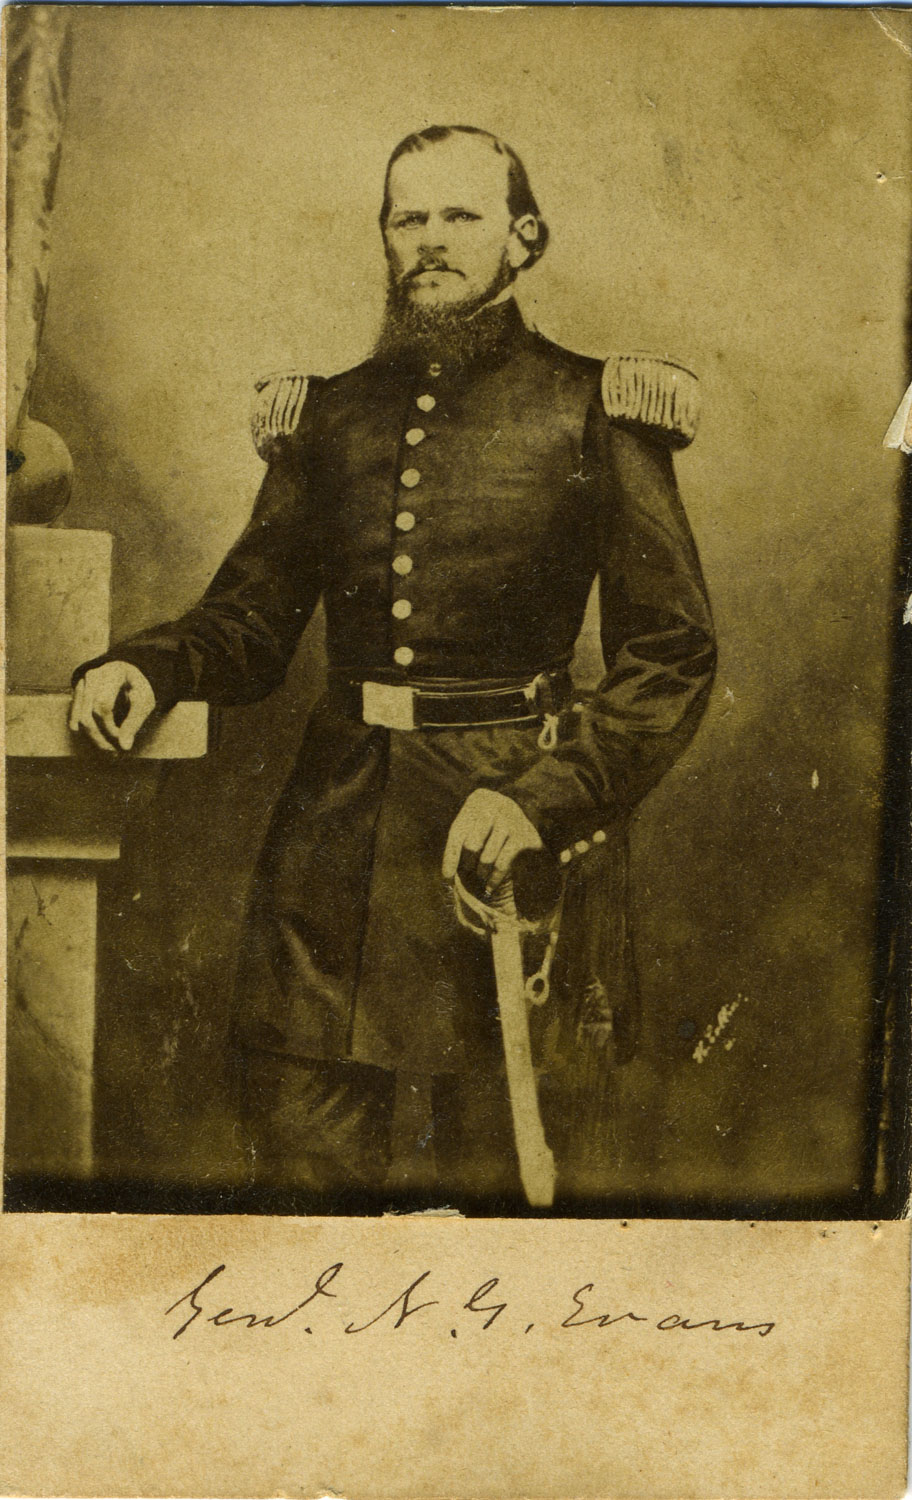 Brigadier General George "Shanks" Evans